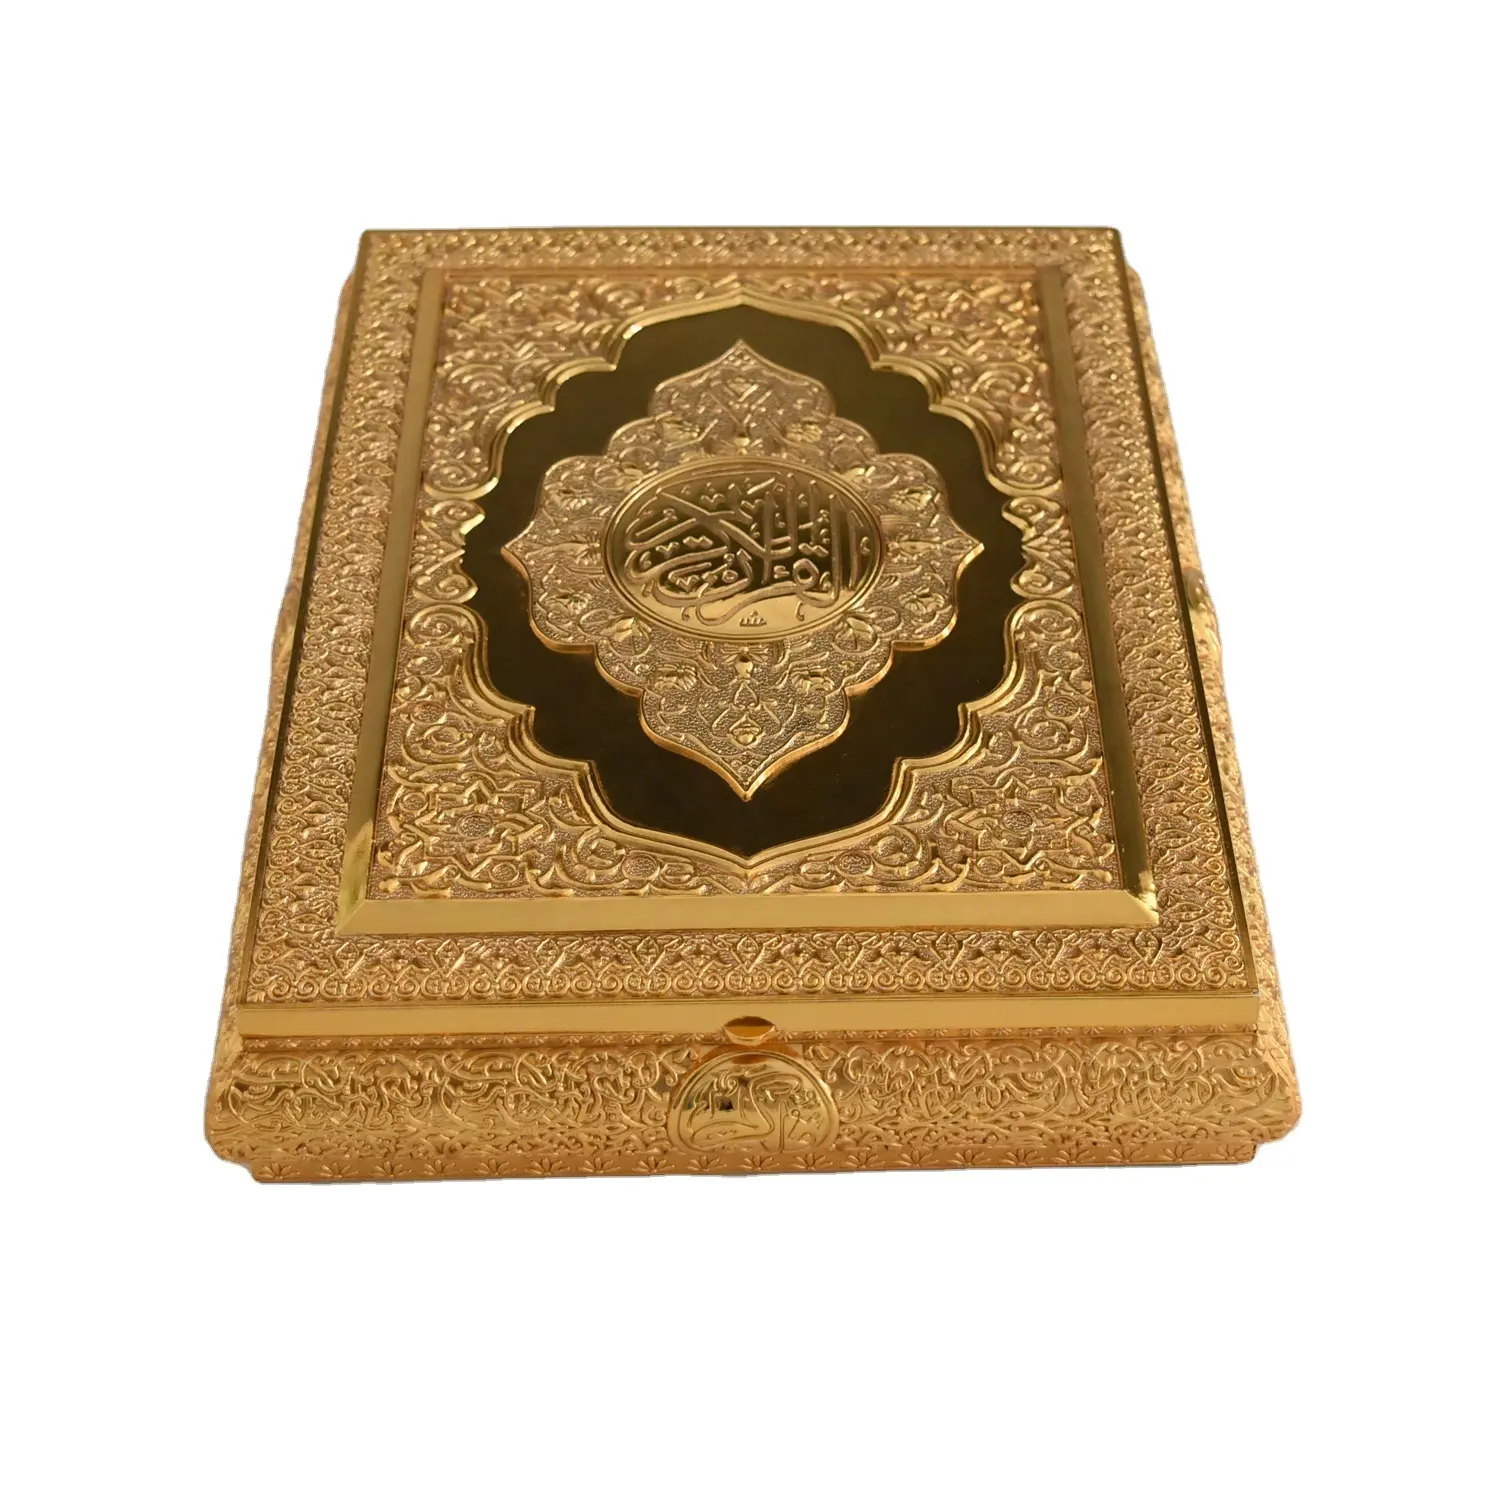 มุสลิมทองสังกะสีอัลลอยขนาดใหญ่คัมภีร์กุรอานกล่องแต่งงานของขวัญเดือนรอมฎอนกล่องพระคัมภีร์